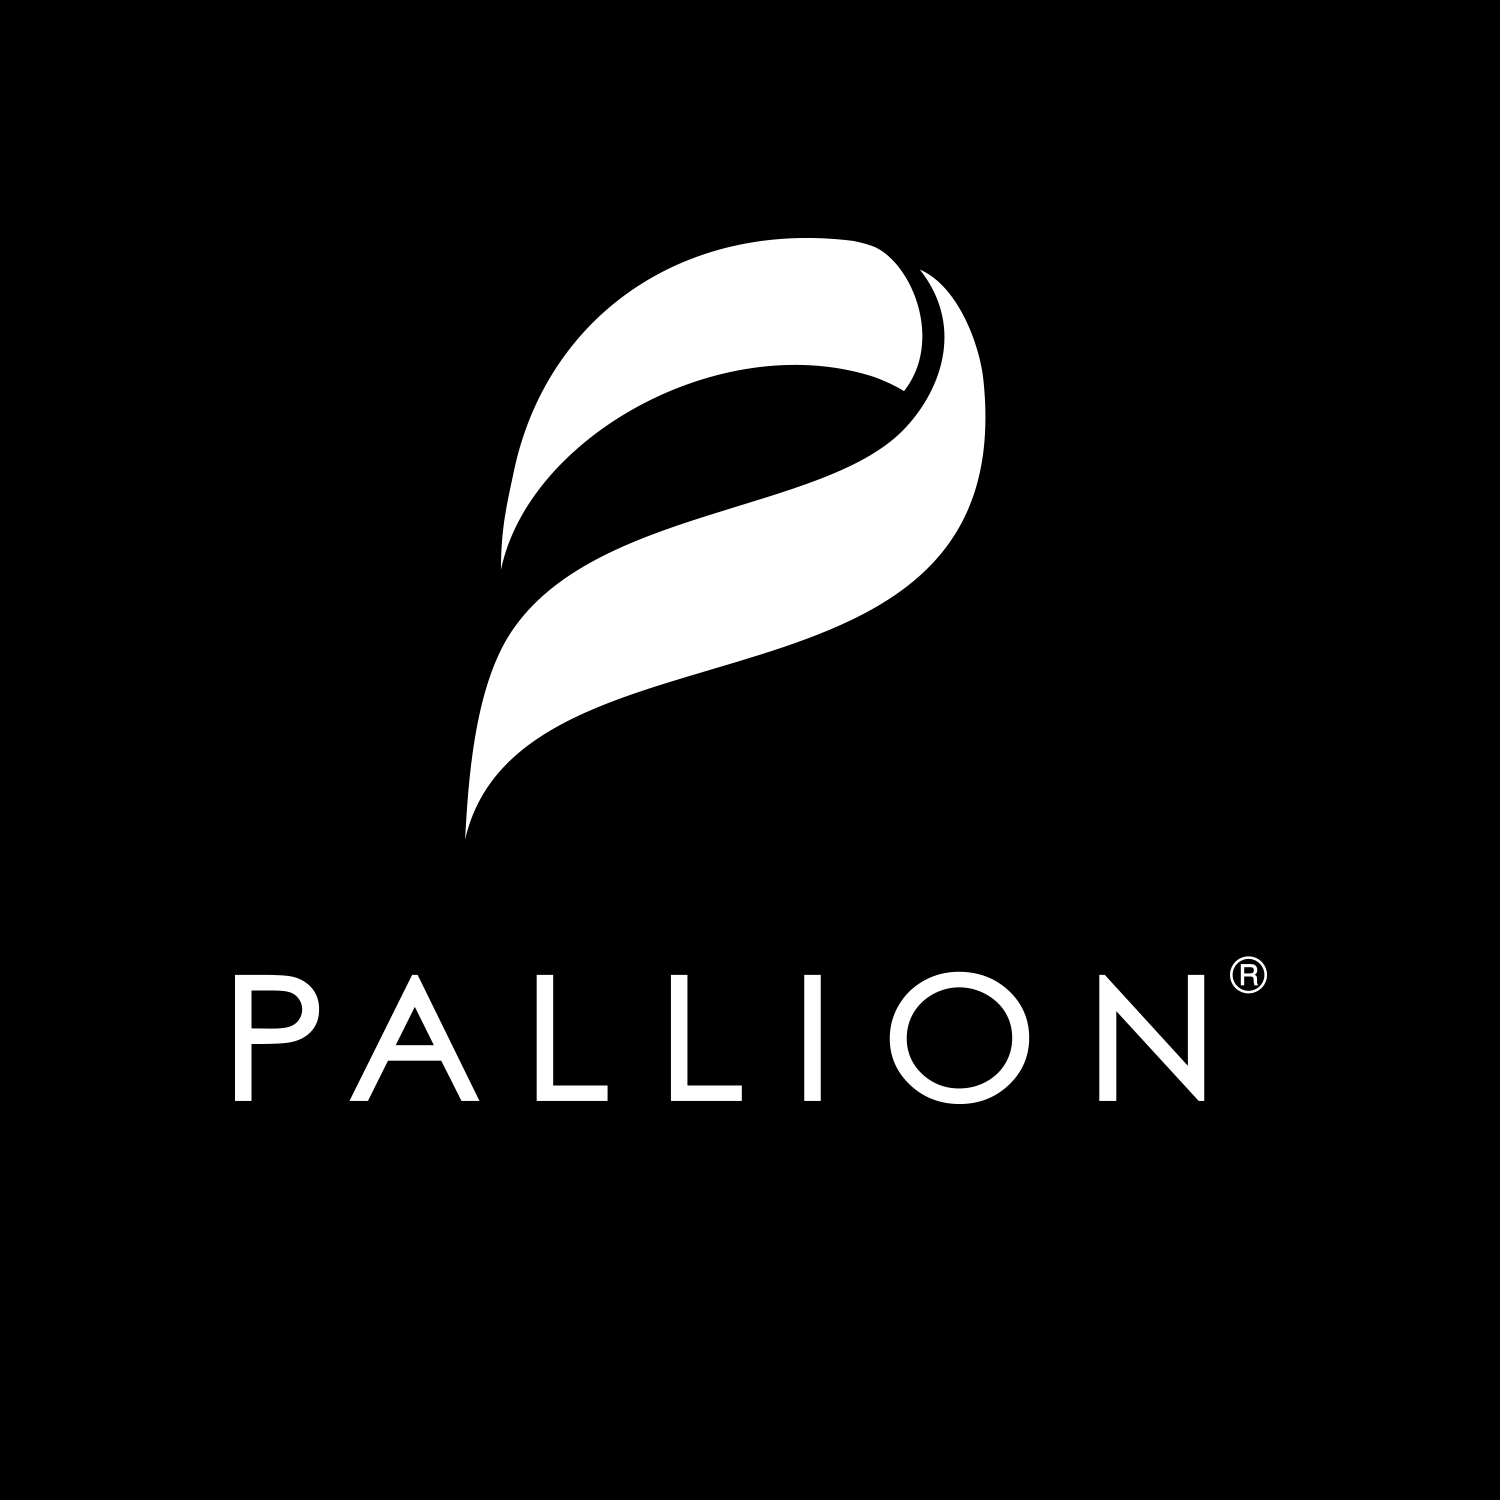 Company logo of Pallion